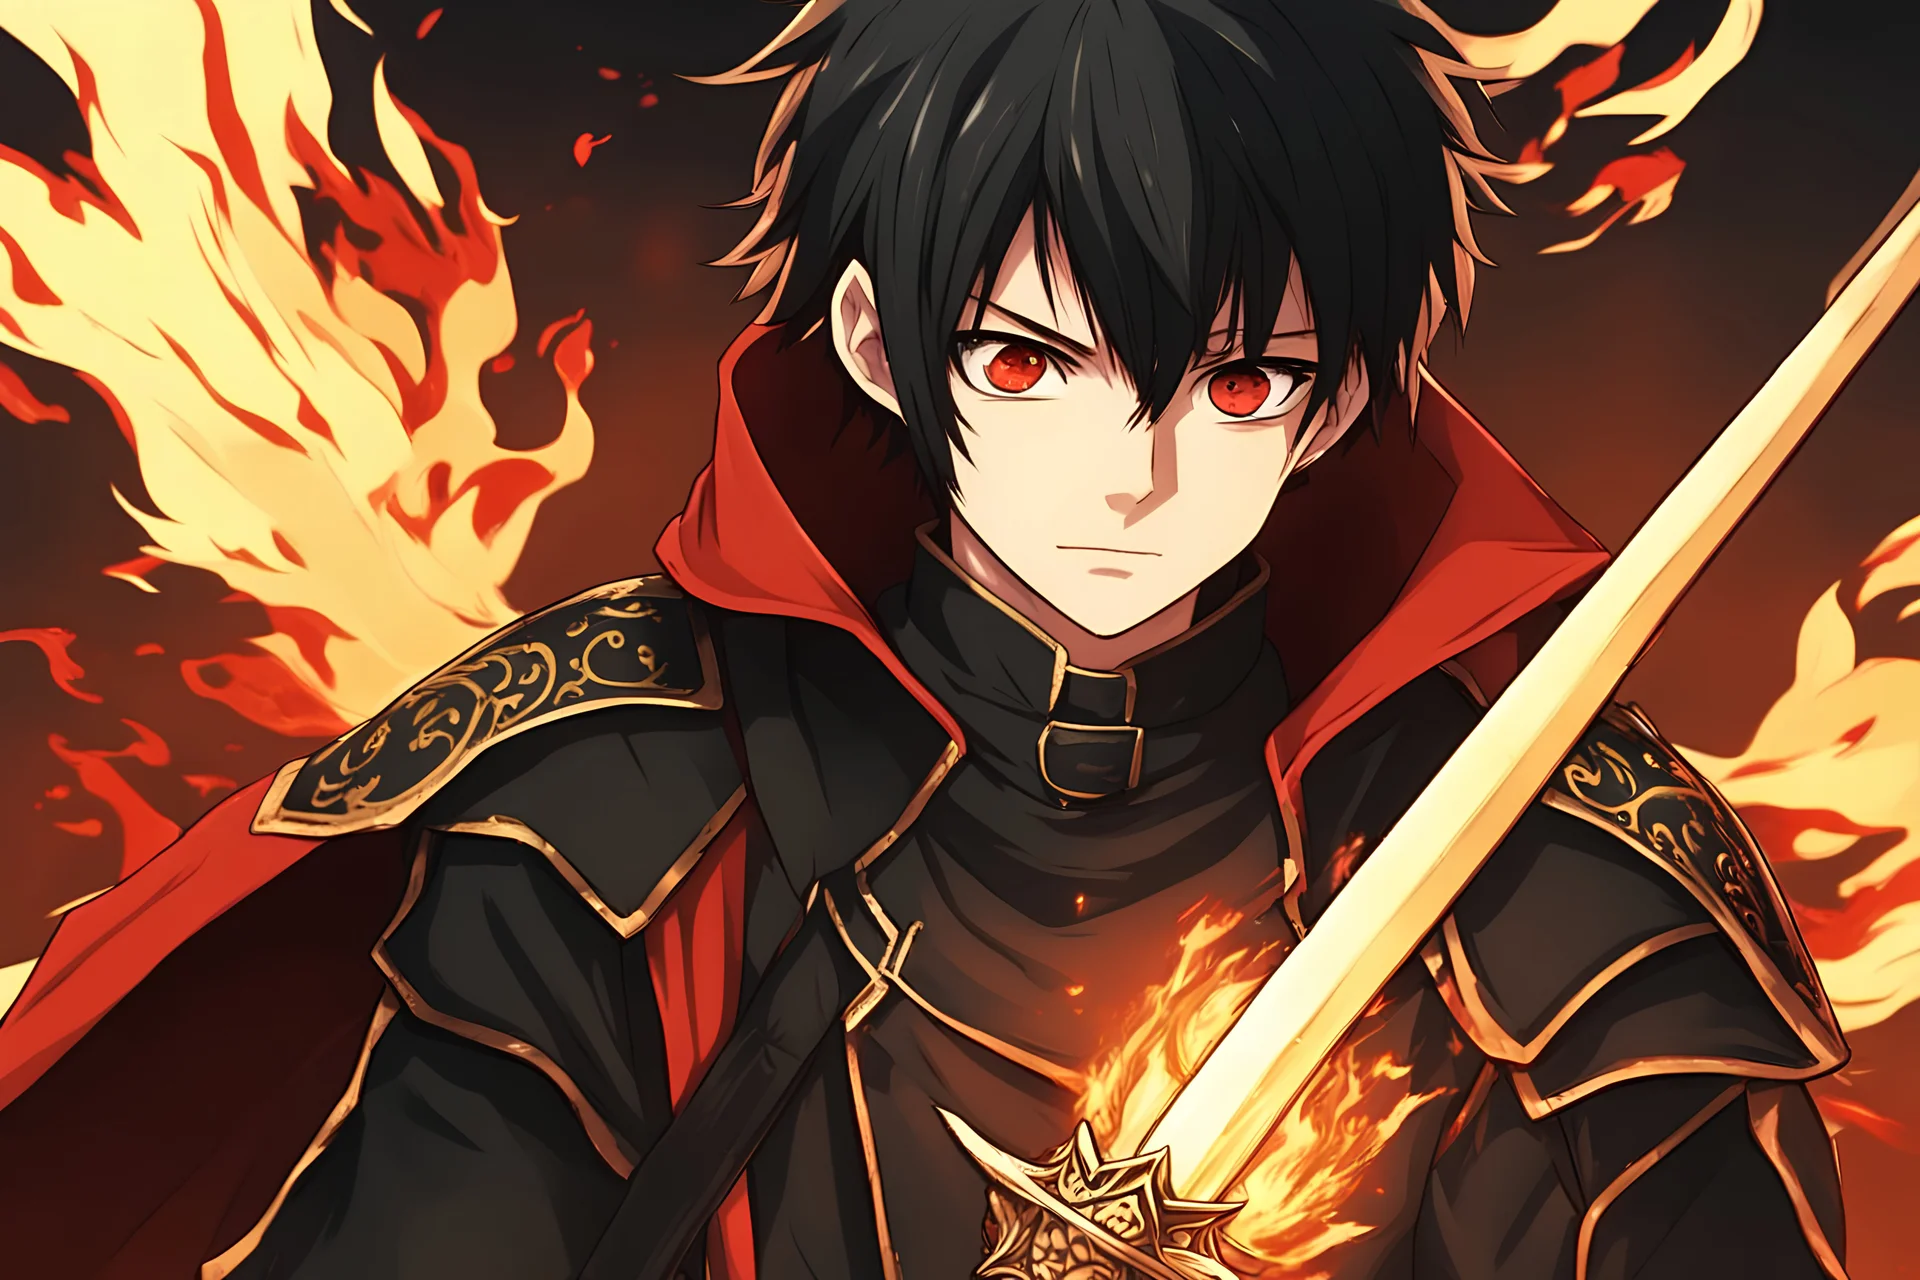 um garoto de anime aparência 16 anos na era medieval um cabelo preto olho esquerdo ,olho direito vermelho com uma espada preta e poderes de fogo usando uma capa preta e uma roupa preta com detalhes vermelhos